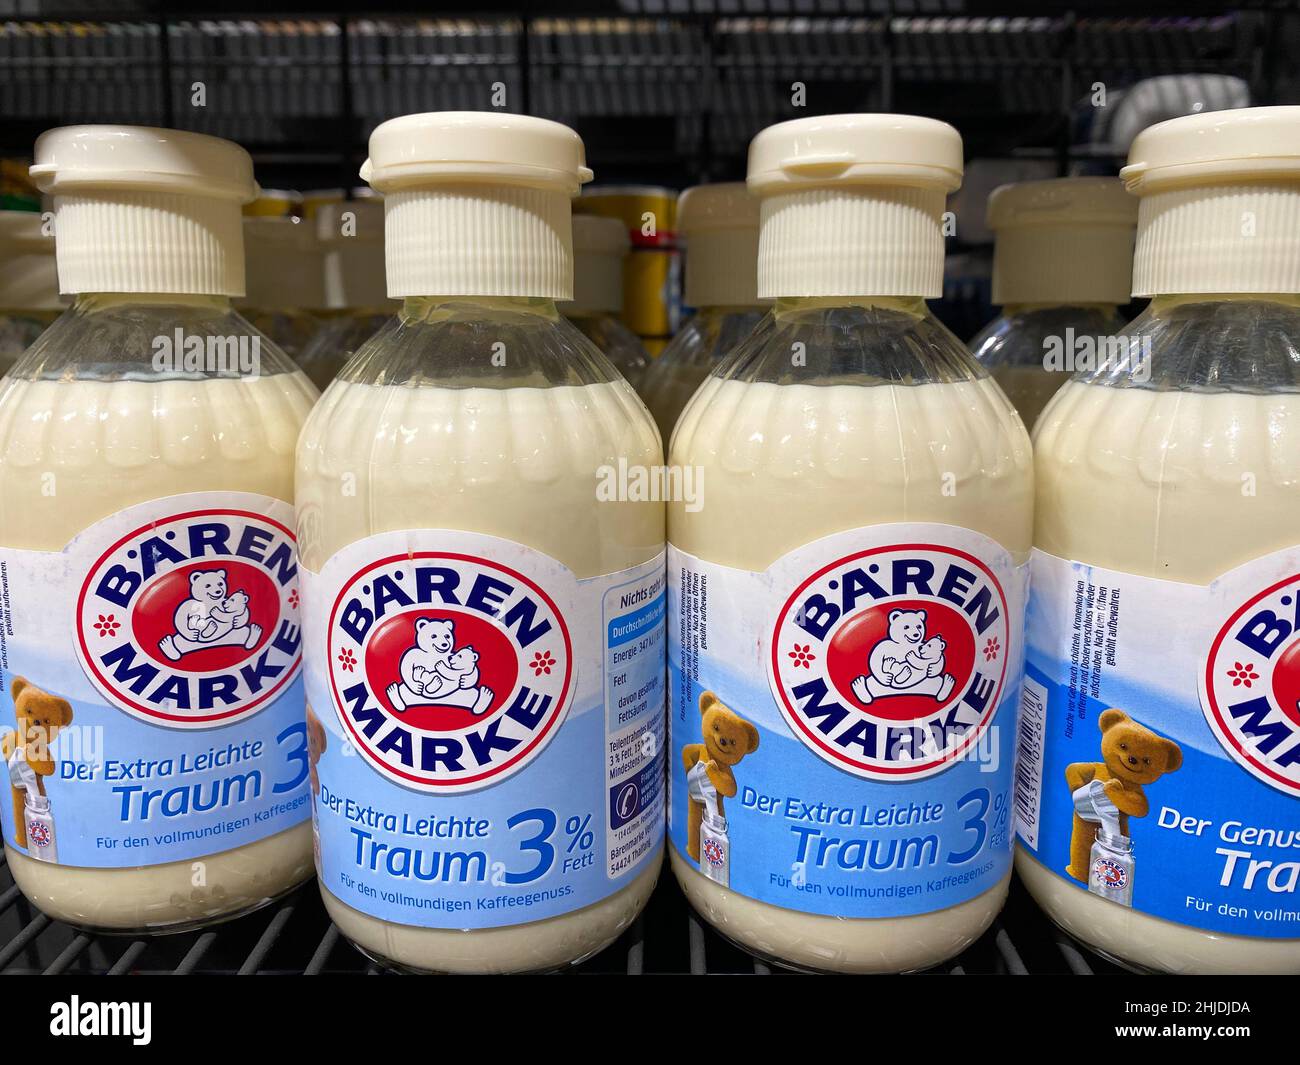 RHEINBACH, DEUTSCHLAND 15. Februar 2021, mehrere kleine Flaschen  Bärenmarke-Kaffeemilch mit 3 Prozent Fett im Regal eines Supermarktes  Stockfotografie - Alamy